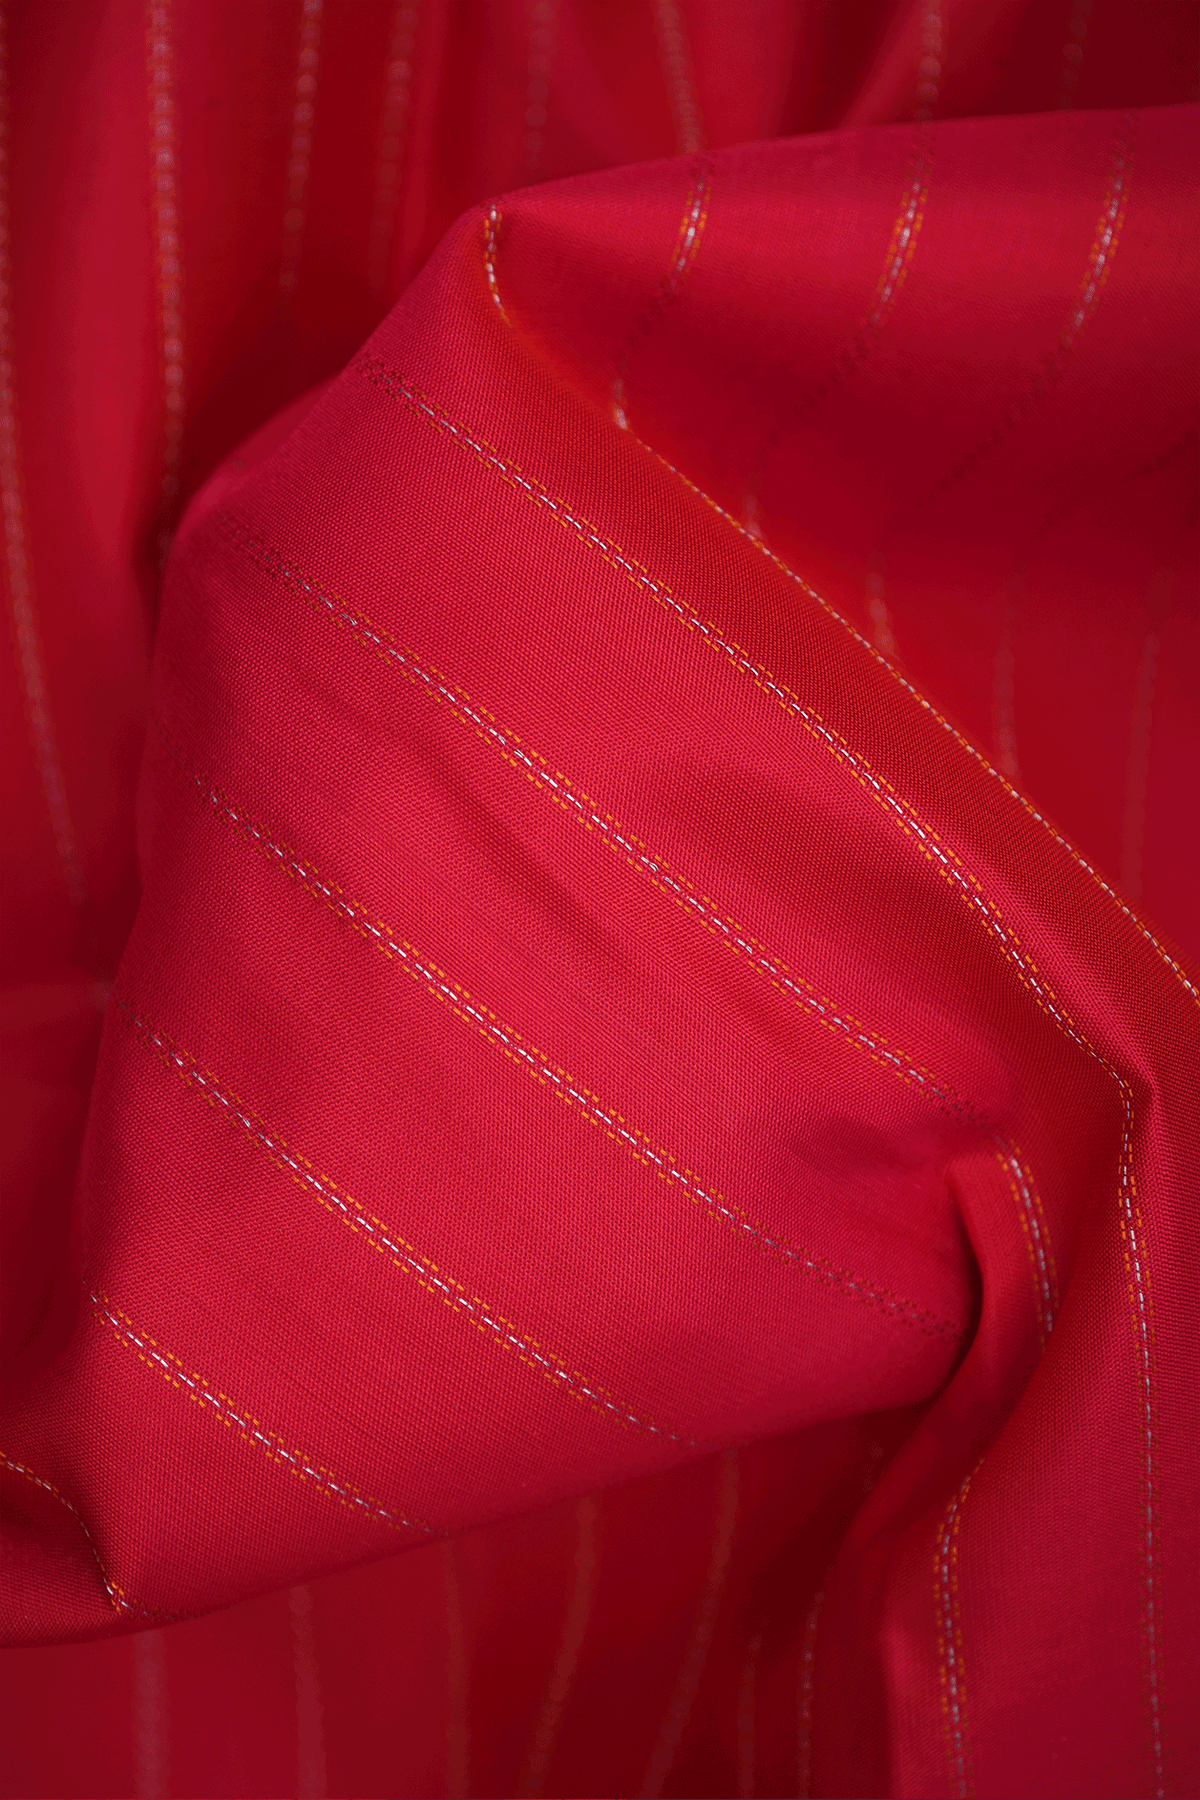 Striped Threadwork Design Ruby Red Soft Silk Saree